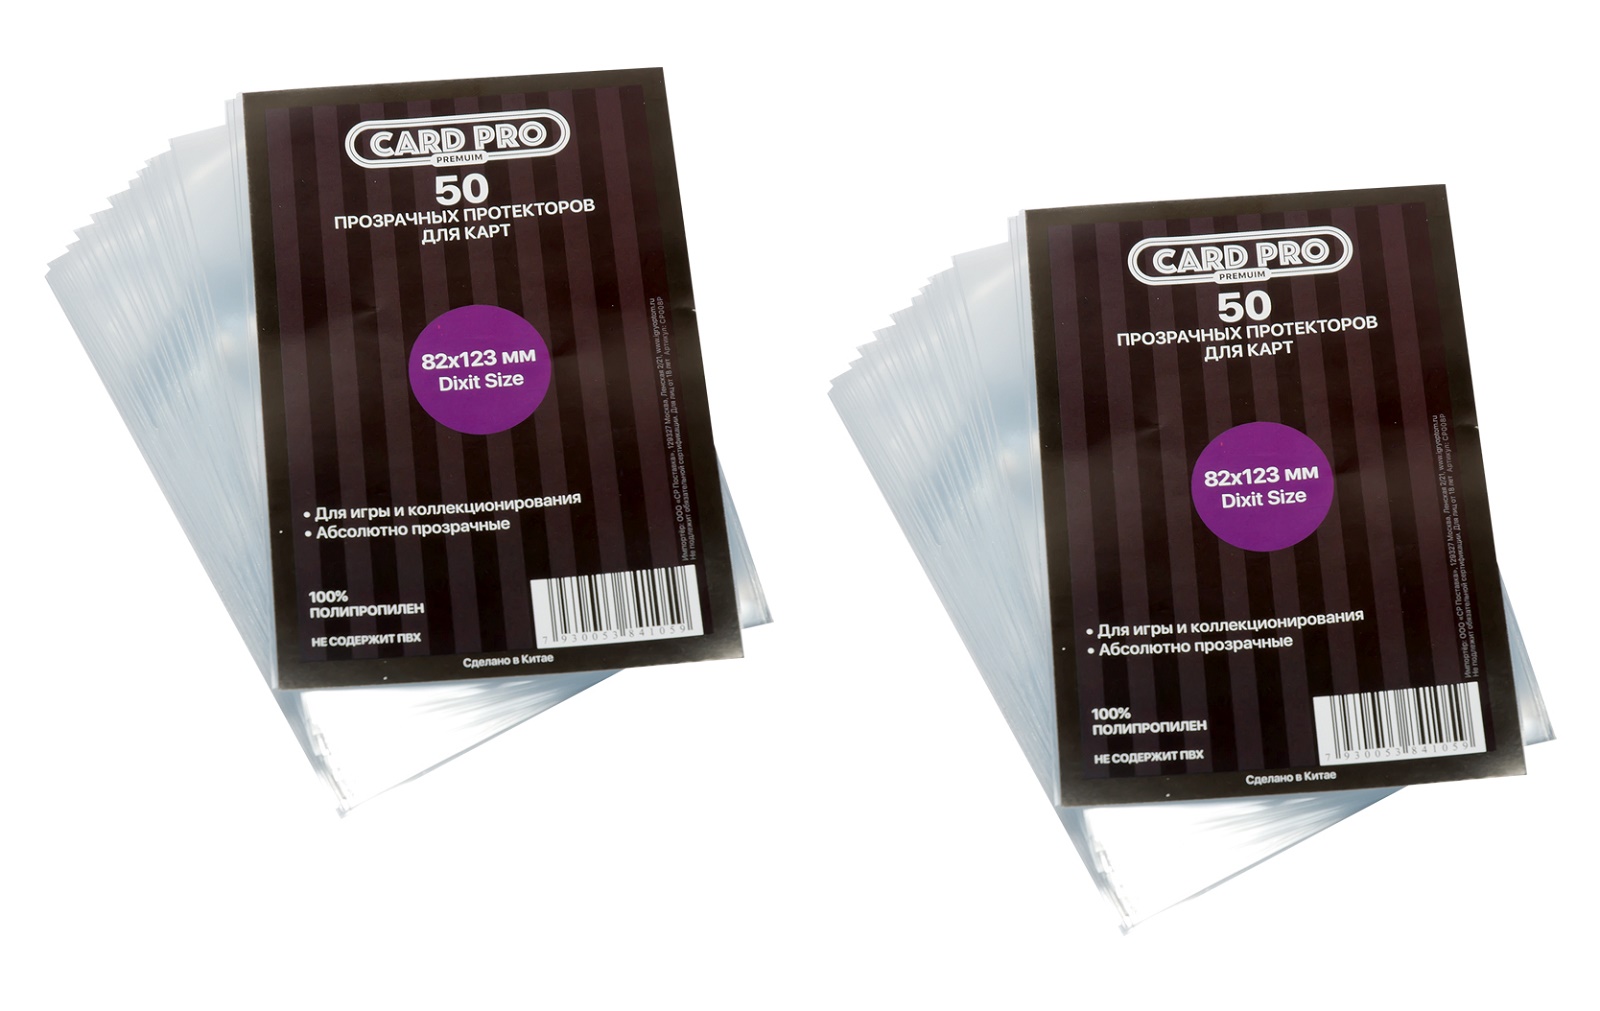 Протекторы Card-Pro PREMIUM Dixit Size для настольных игр 82x123 мм. 2 пачки протекторы card pro premium dixit size для настольных игр 82x123 мм 2 пачки